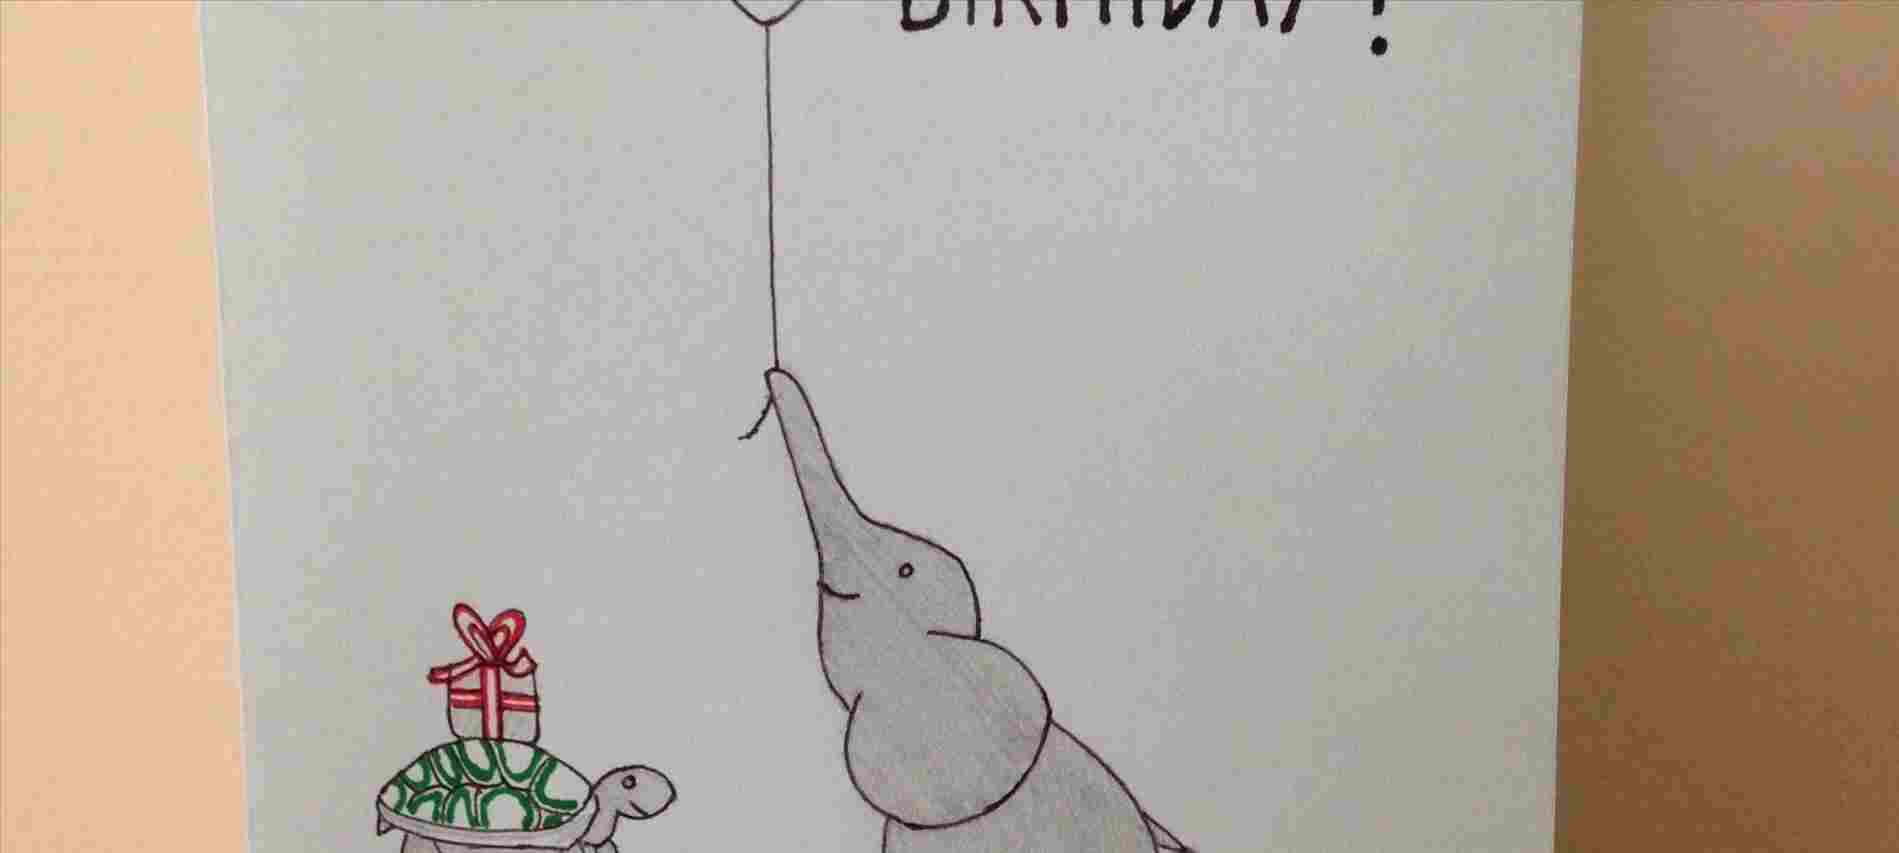 Hand Drawn Birthday Card Ideas Rhlqaudiocom Birthday Hand Drawn Birthday Card Drawing Ideas Card